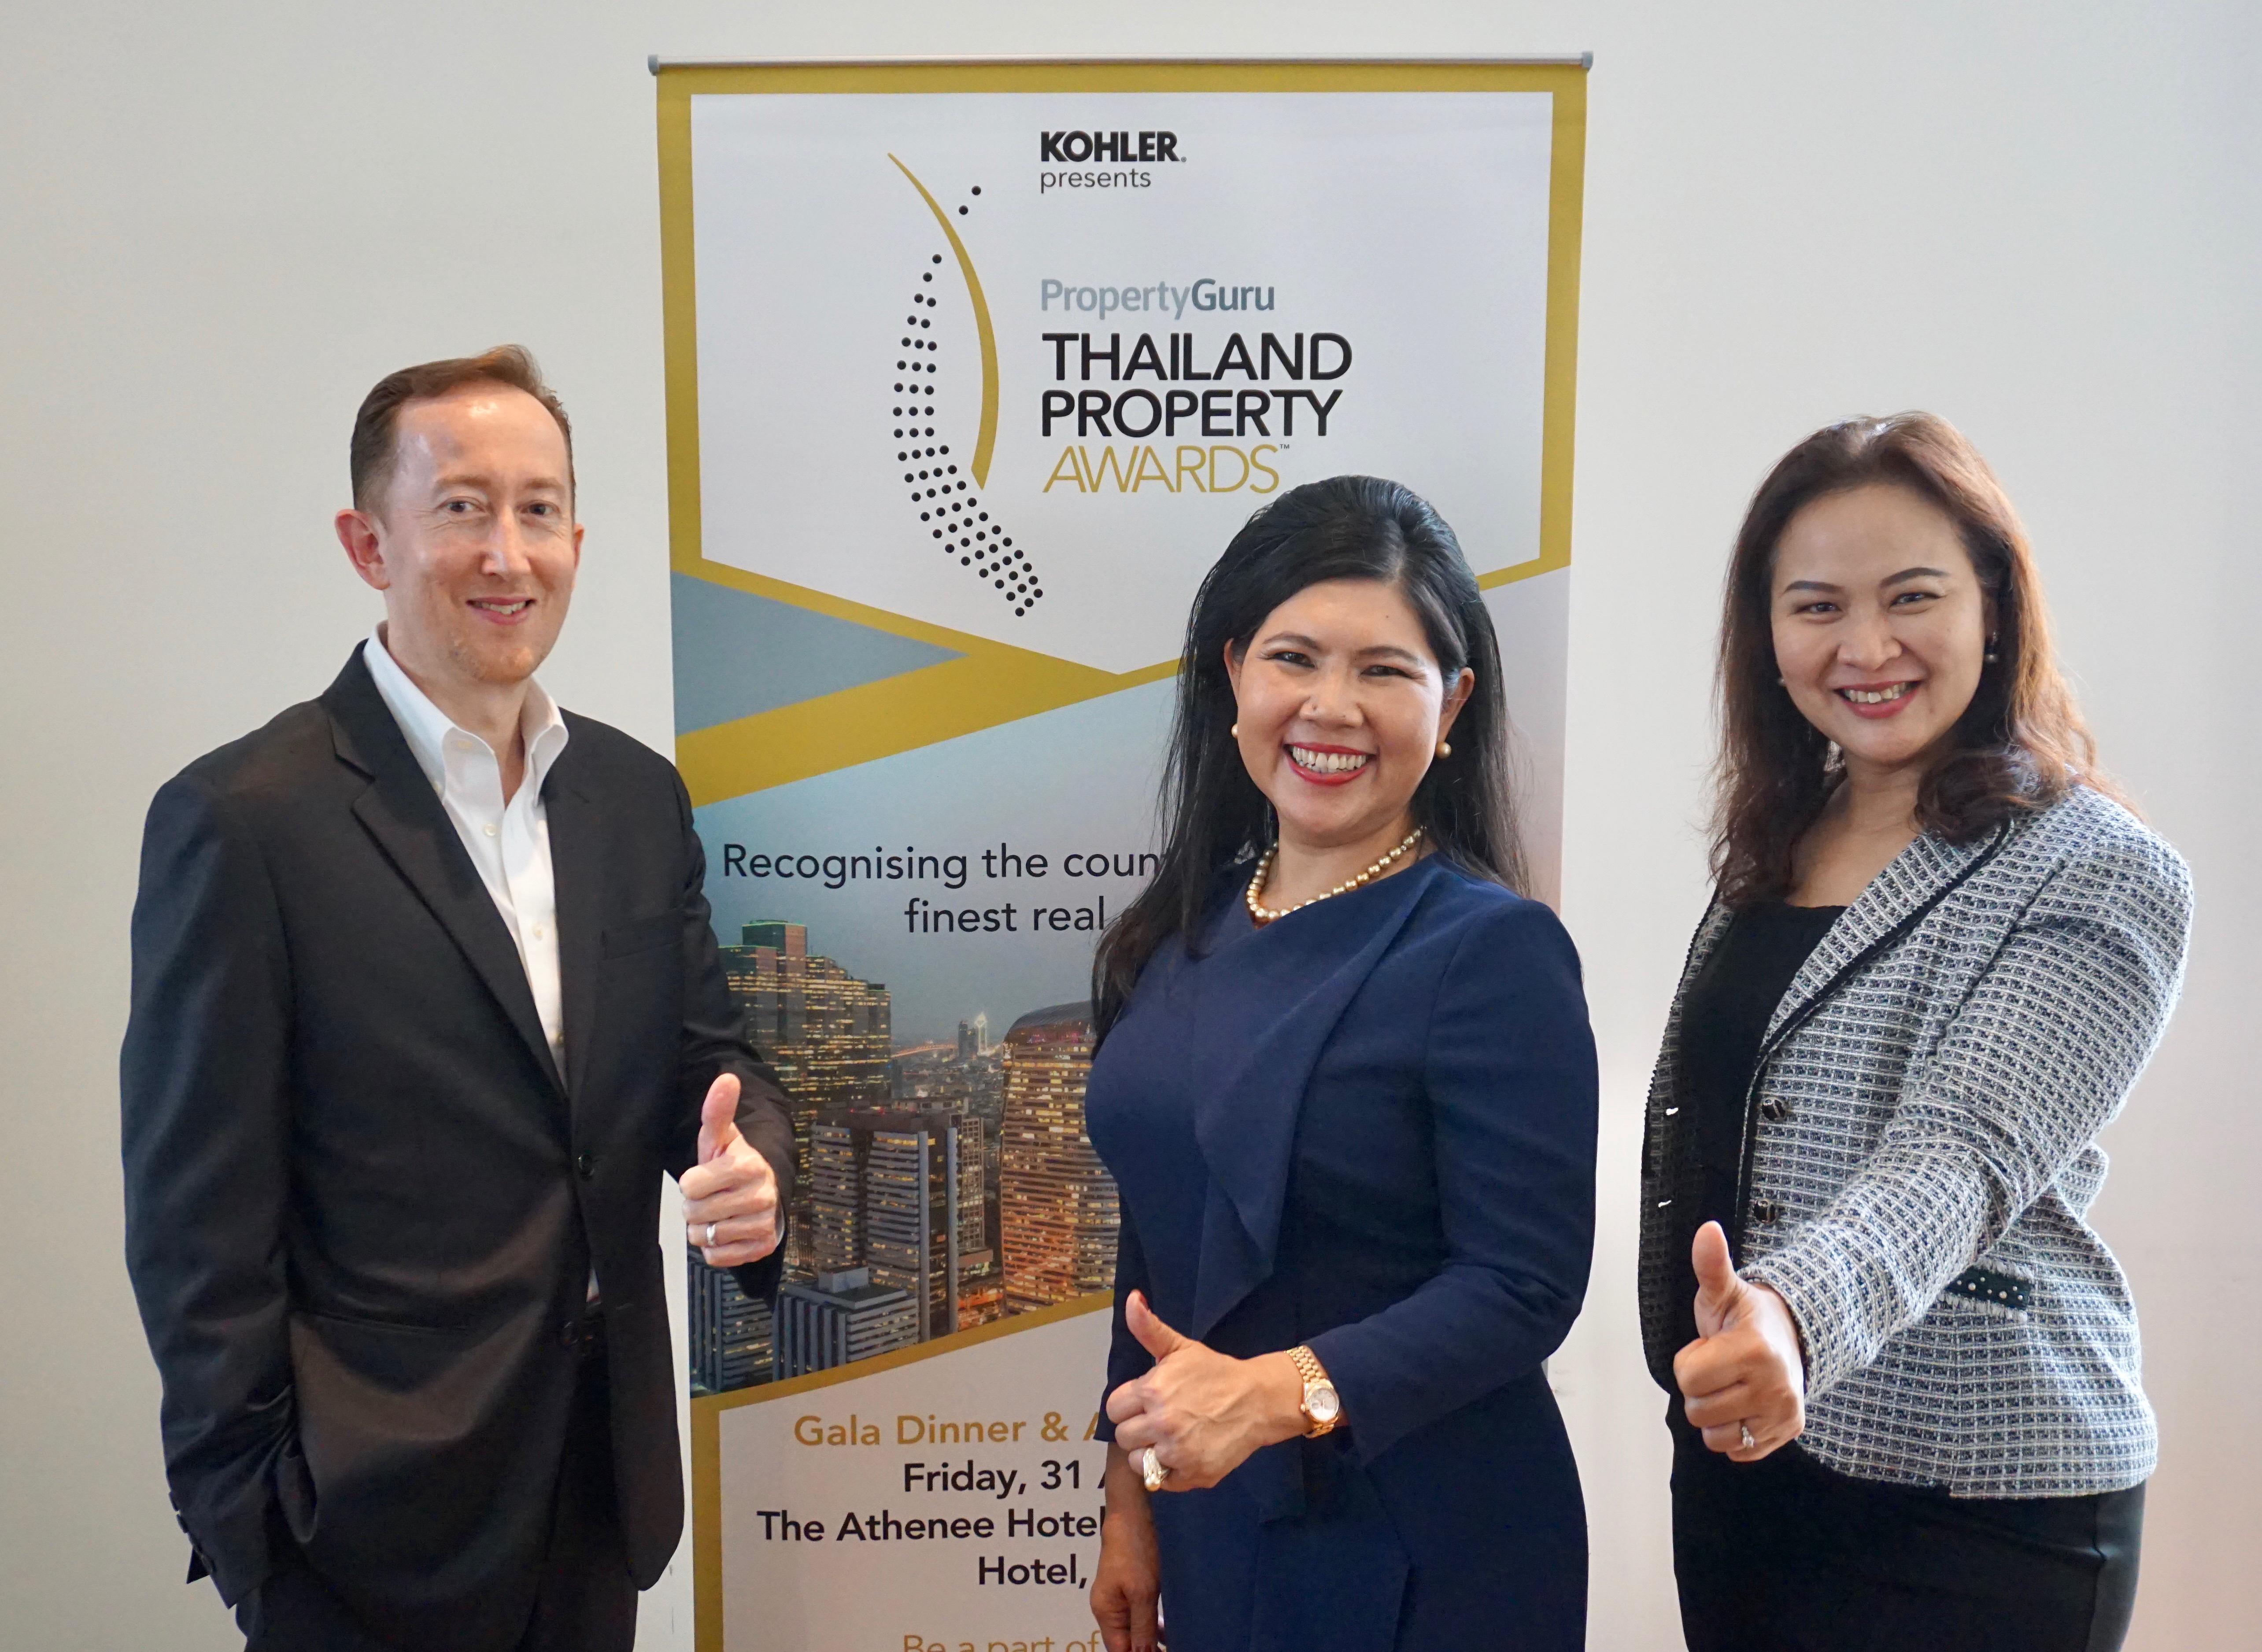 รูปบทความ ขยายเวลารับสมัคร Property Guru Thailand Property Awards 2018 ครั้งที่ 13 ถึง 6 ก.ค. นี้